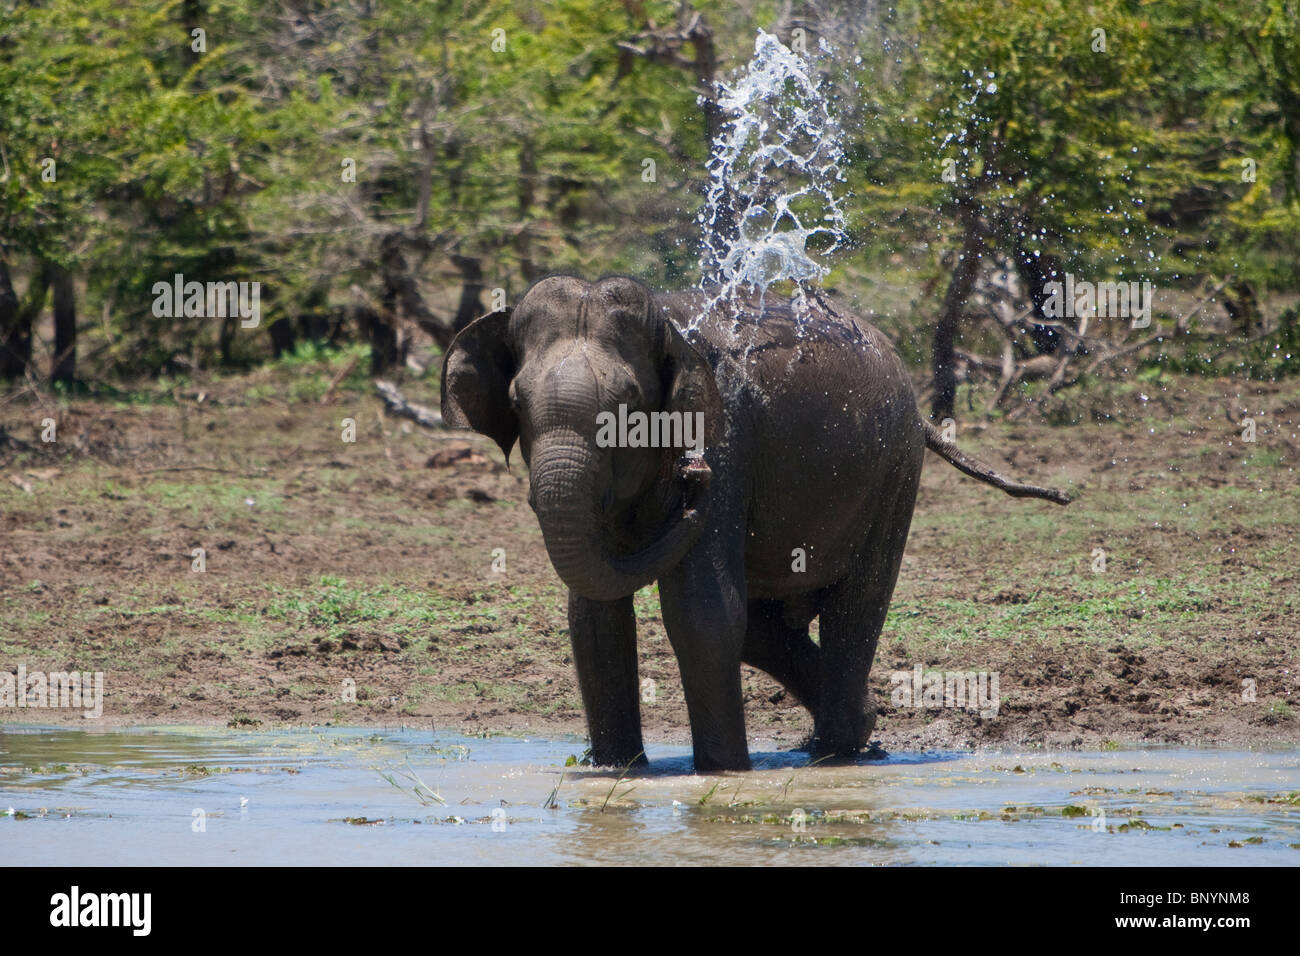 Elefante asiático, Elephas maximus, Indischer Elefante, Bull beber y bañarse en un abrevadero en el Parque Nacional de Yala, Sri Lanka Foto de stock